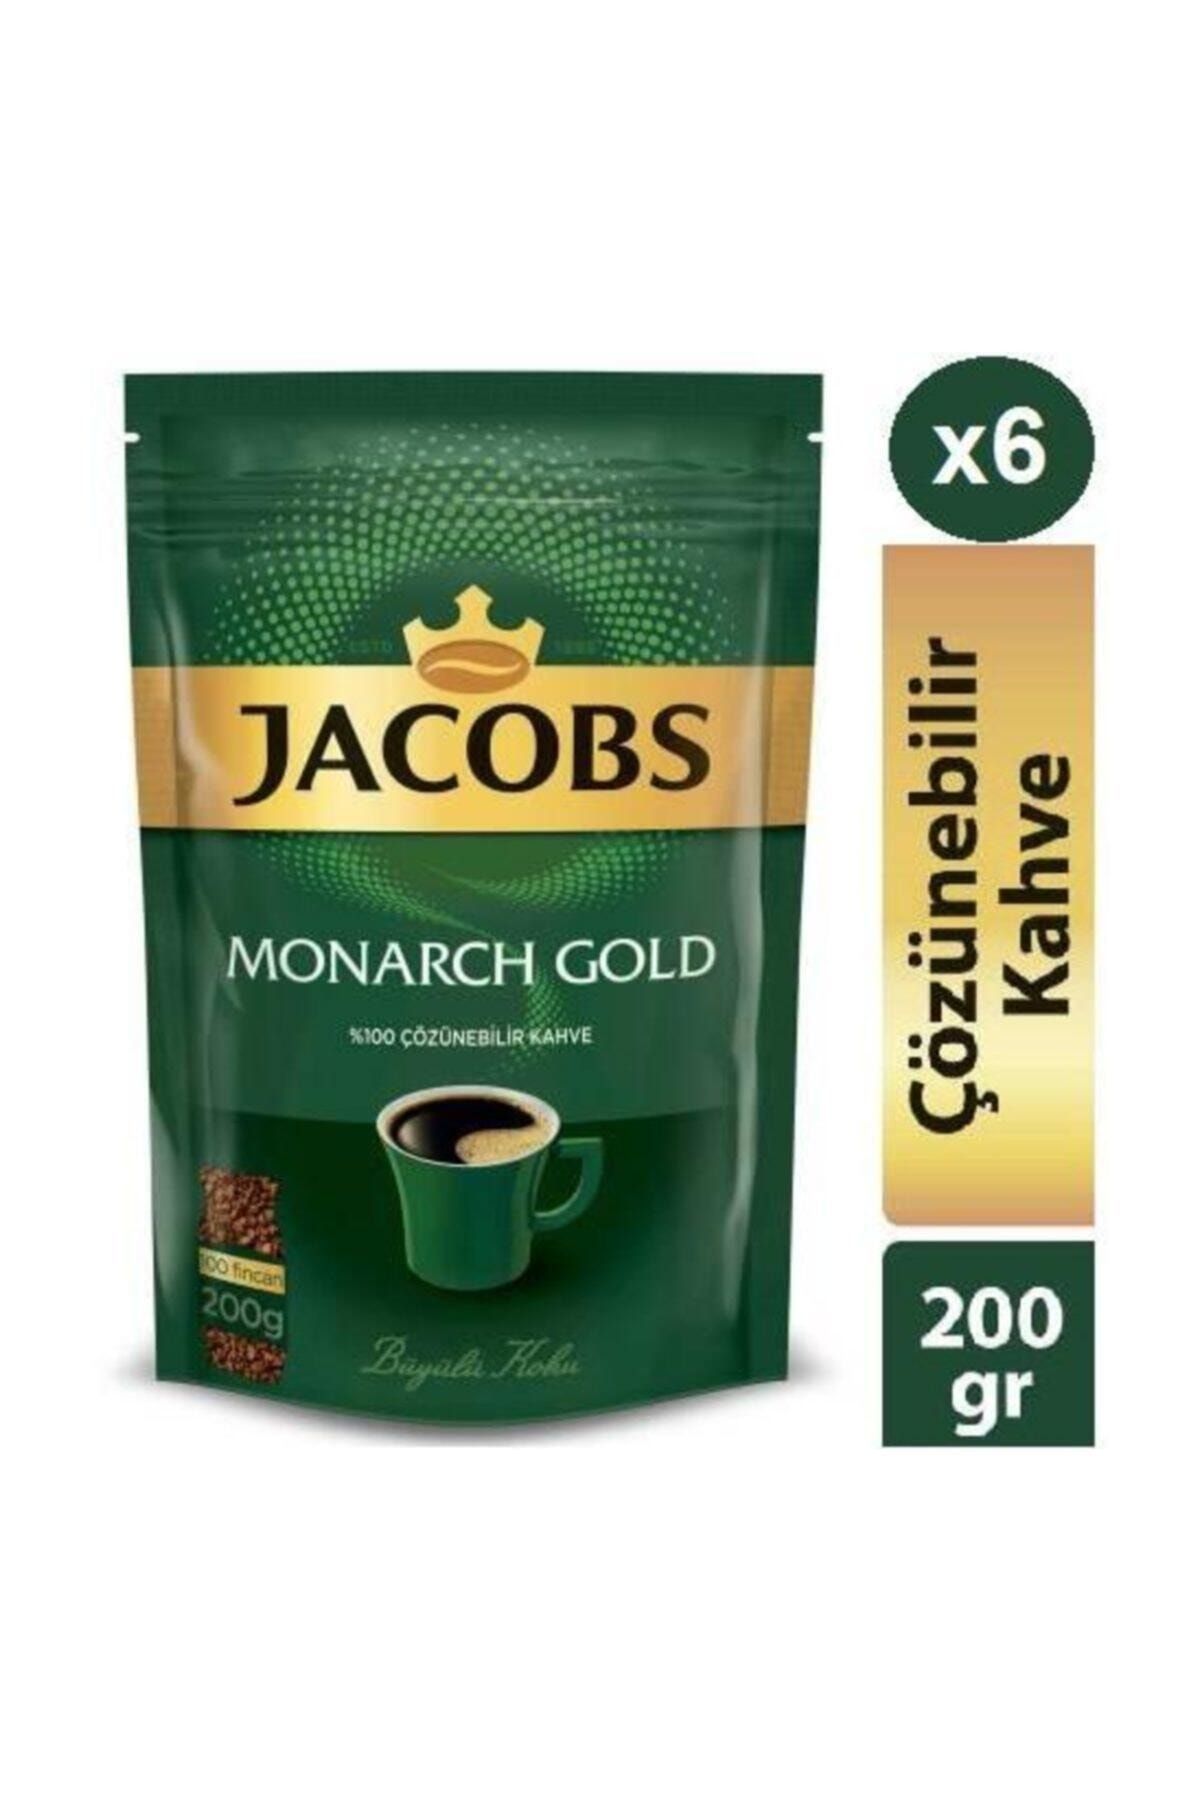 Jacobs Monarch Gold 200g * 6 Adet Ekopaket Hazır Kahve